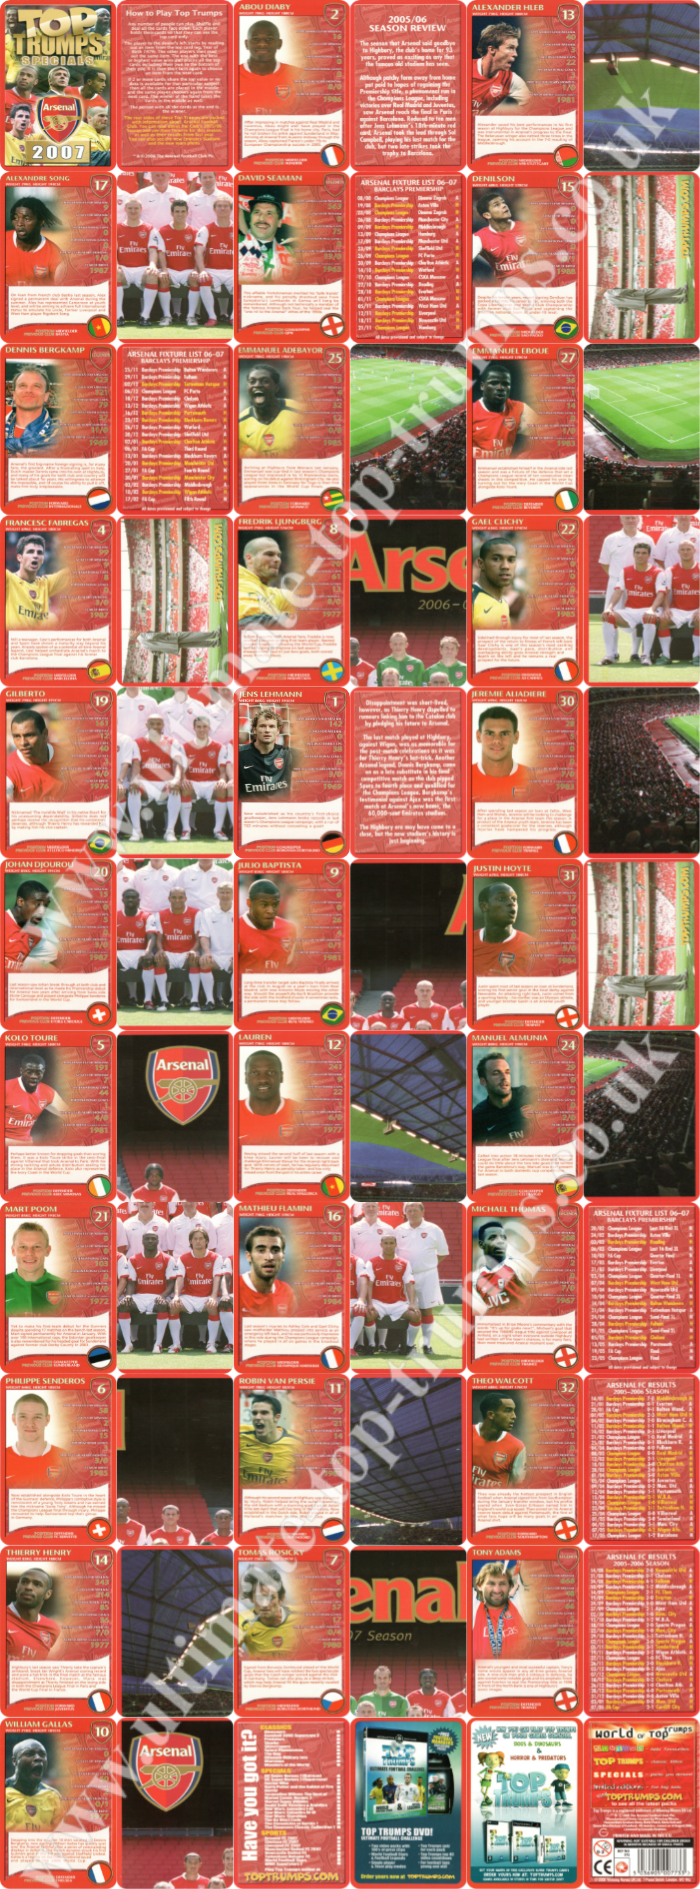 Arsenal 2007